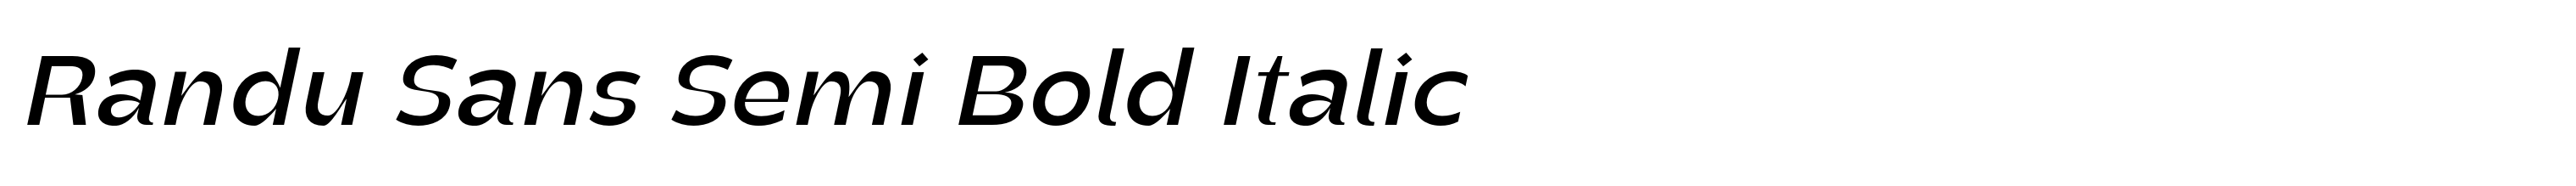 Randu Sans Semi Bold Italic